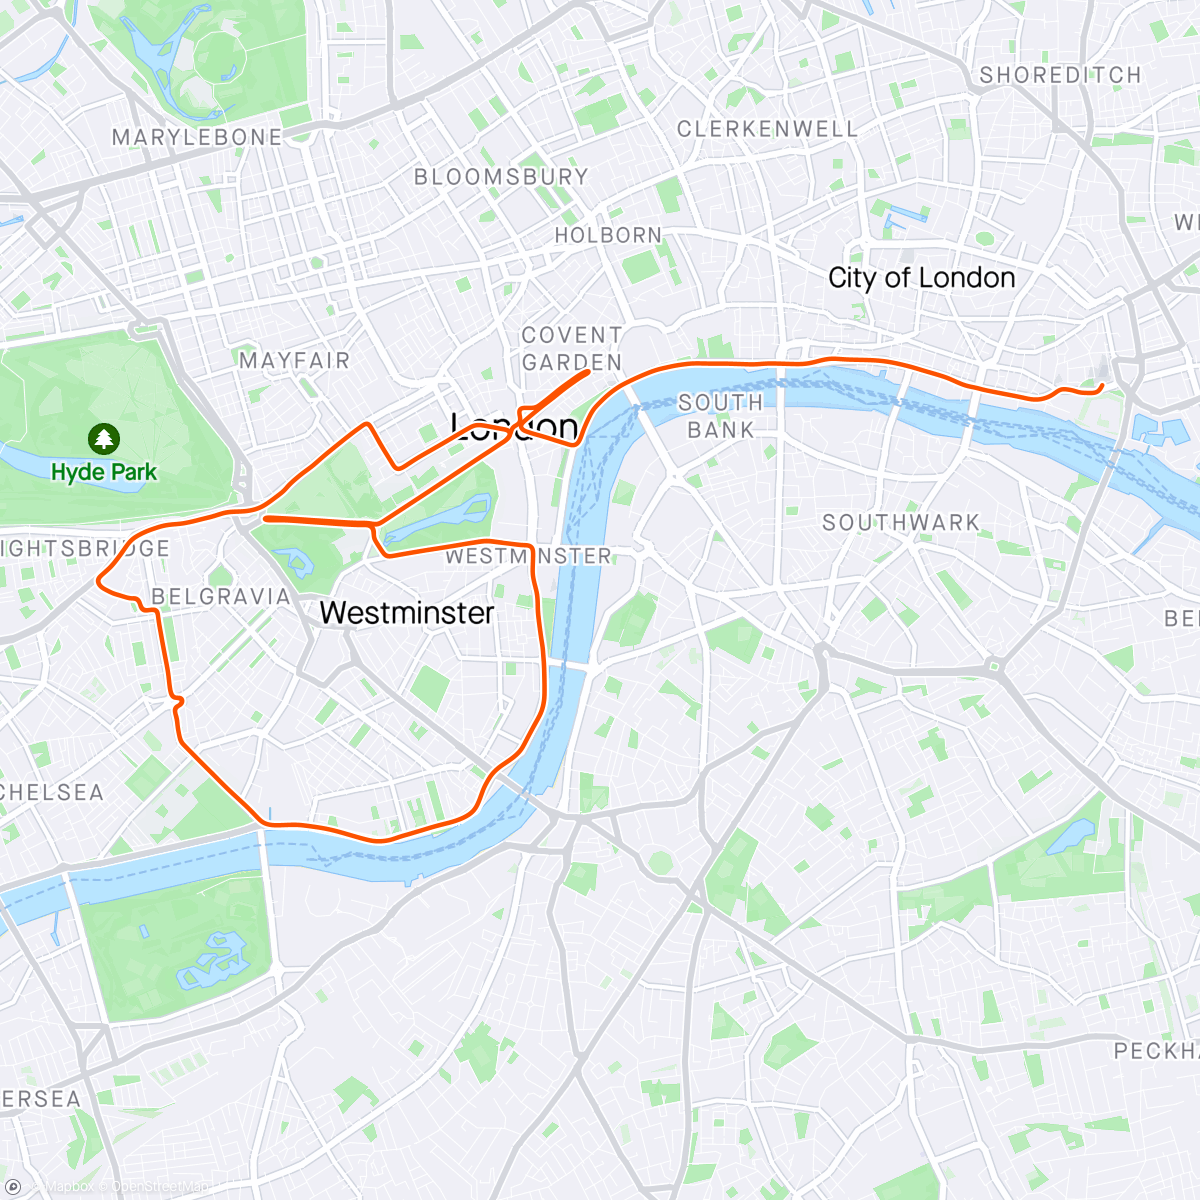 アクティビティ「Zwift - Group Ride: Zwift Riders Scotland Sunday Club Ride (C) on Greater London Flat in London」の地図